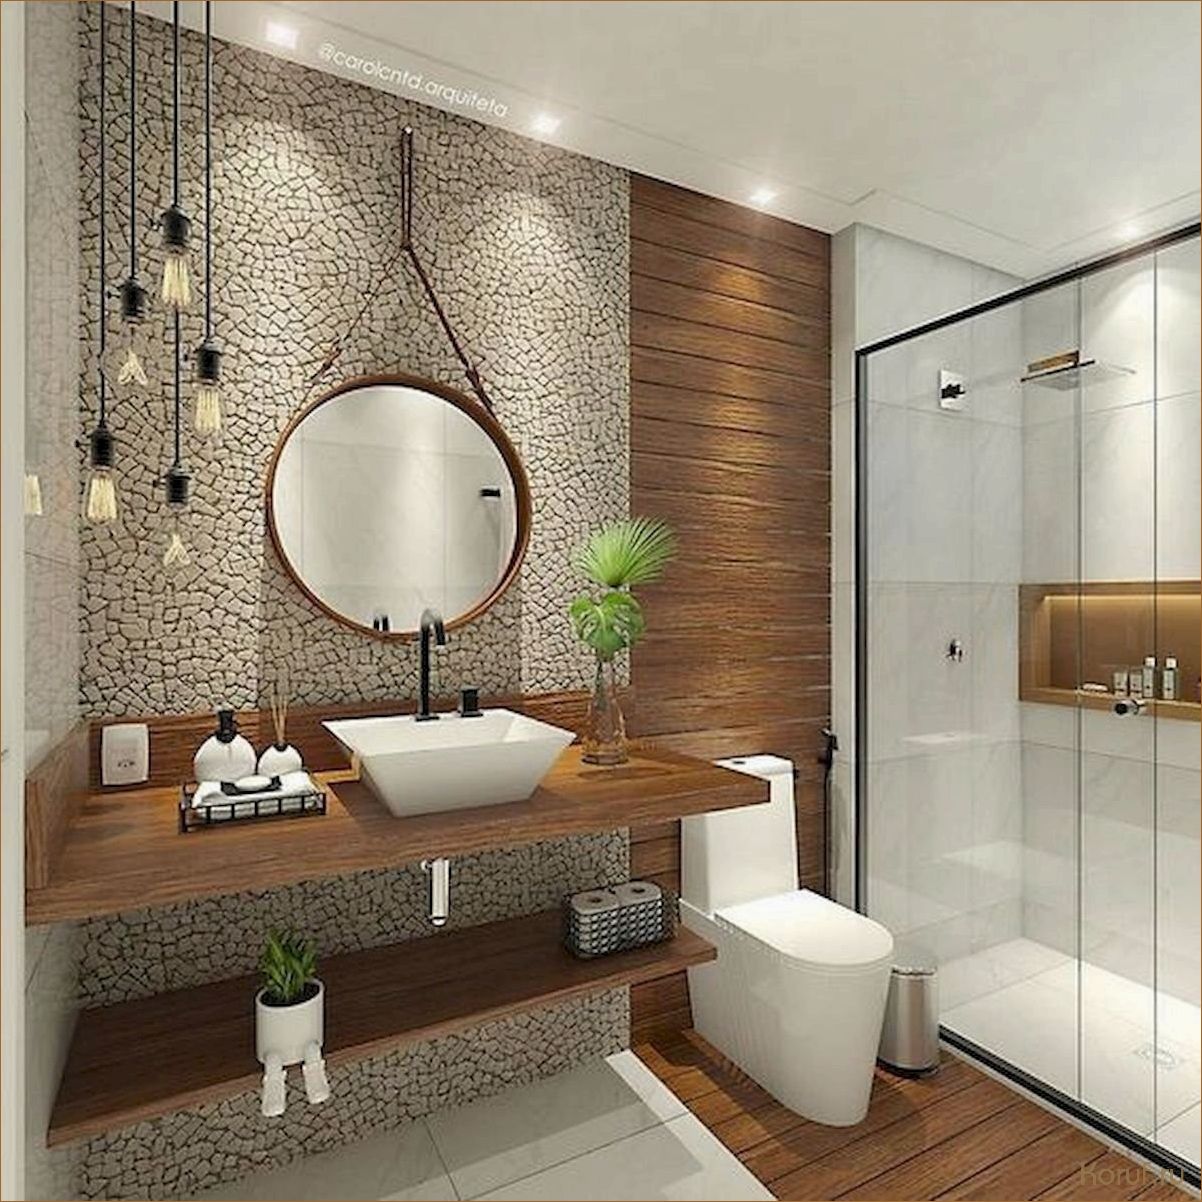 Дизайн установки ванны: создание комфортного пространства для расслабления и отдыха